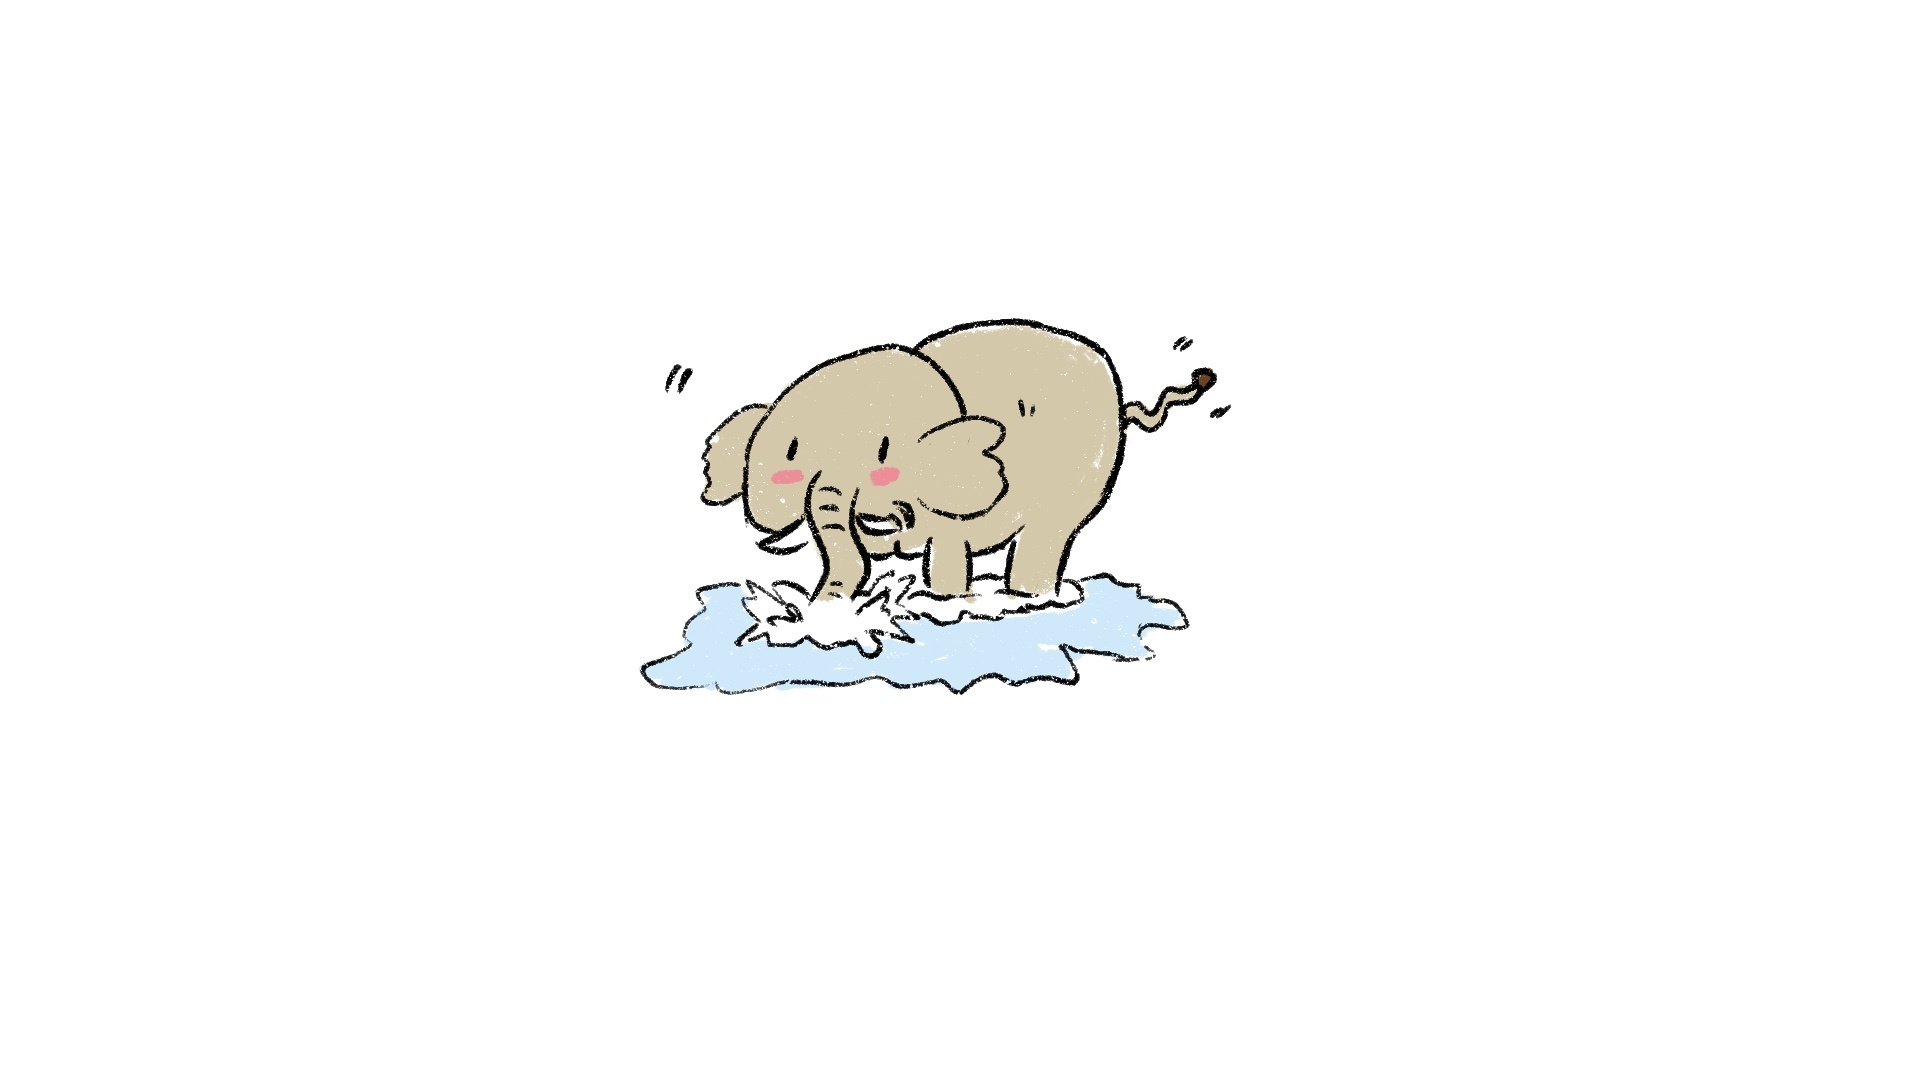 【小阿图科普】为什么大象用鼻子吸水不会被呛到?